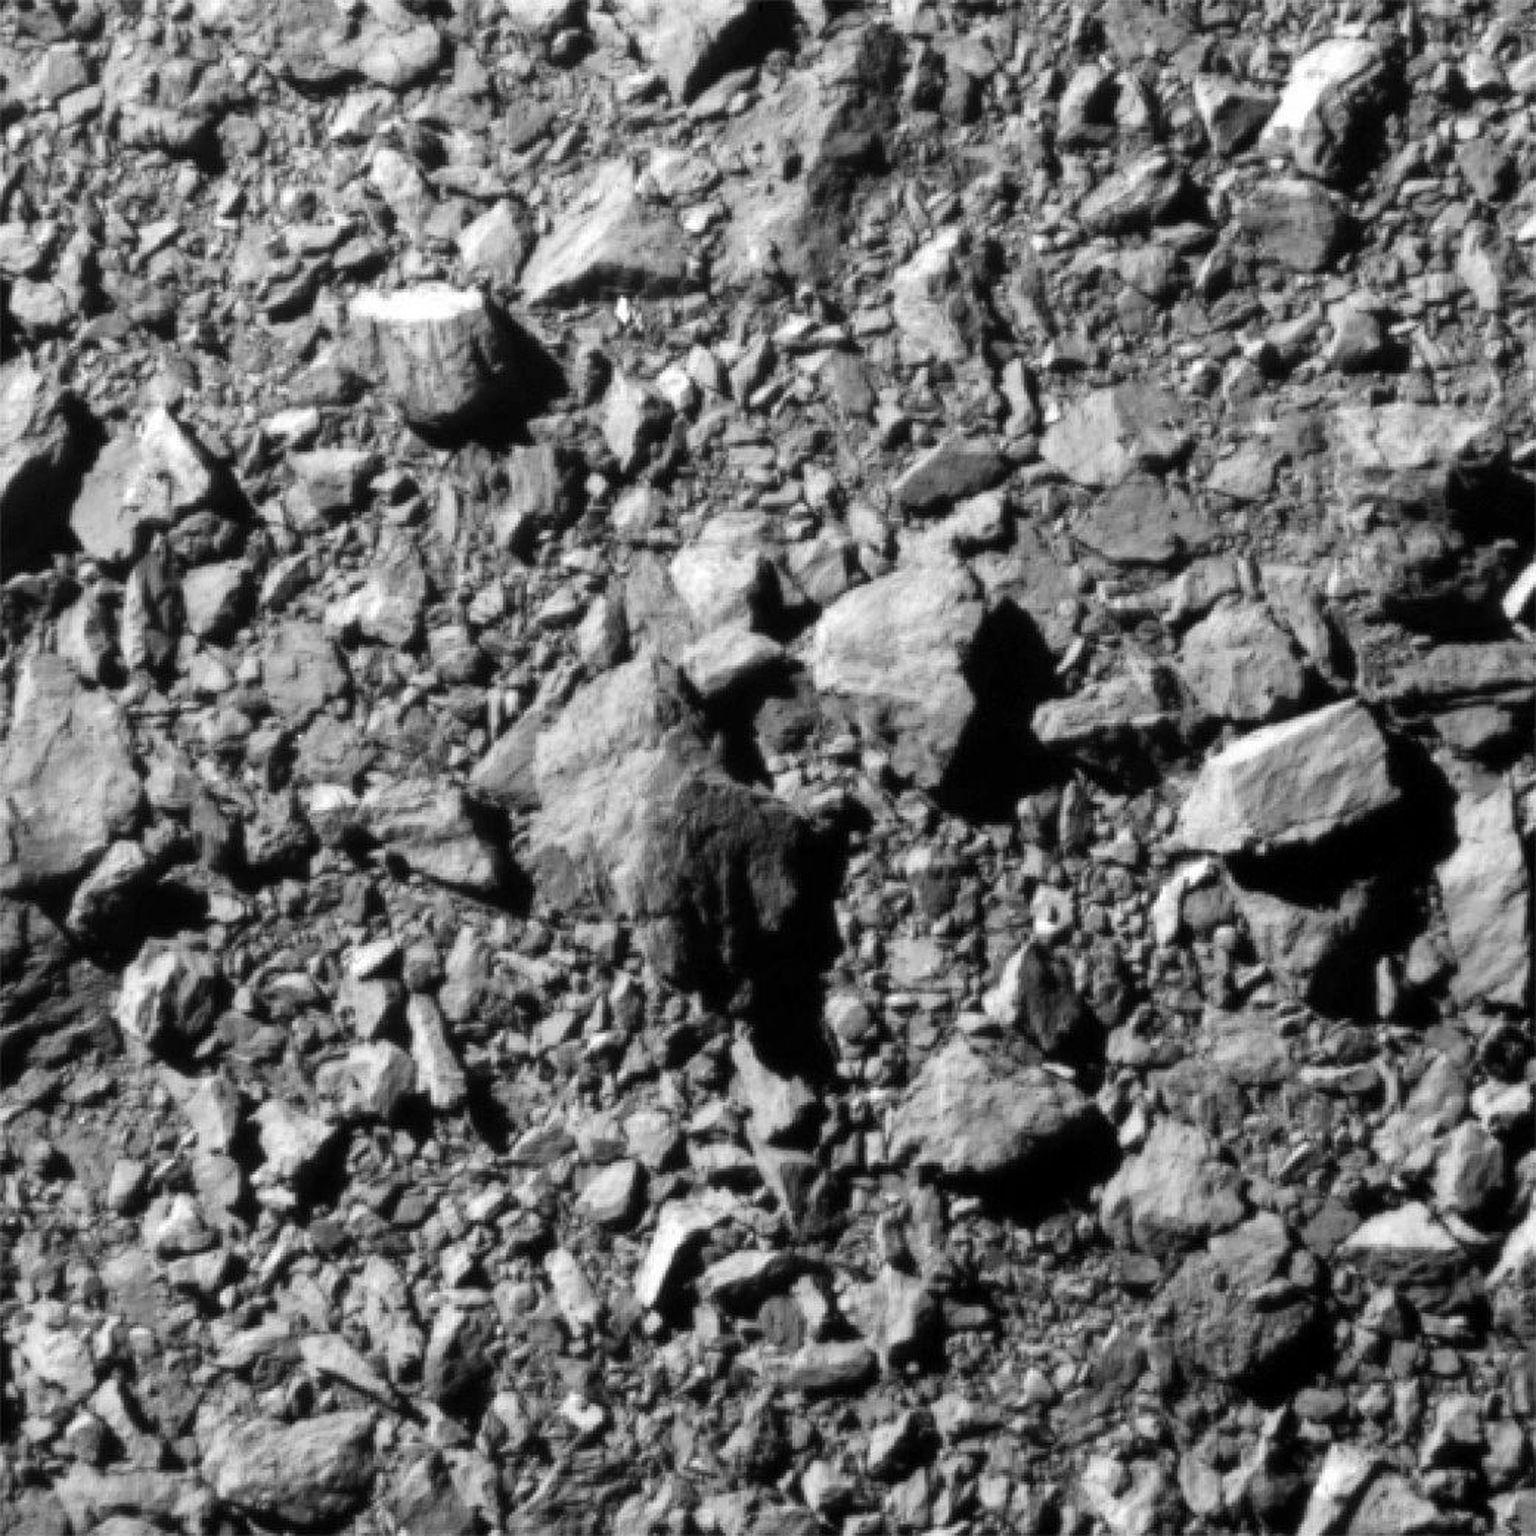 DARTi esiosas olev DRACO täppiskaamera nägi enne kokkupõrget just sellist pilti Dimorphose pinnast. Siis oli kosmiline buldooser kuukese pinnast 12 km kaugusel. DRACO on kitsa vaateväljaga kaamera, mille abil navigeeriti DART sihtmärgile. 